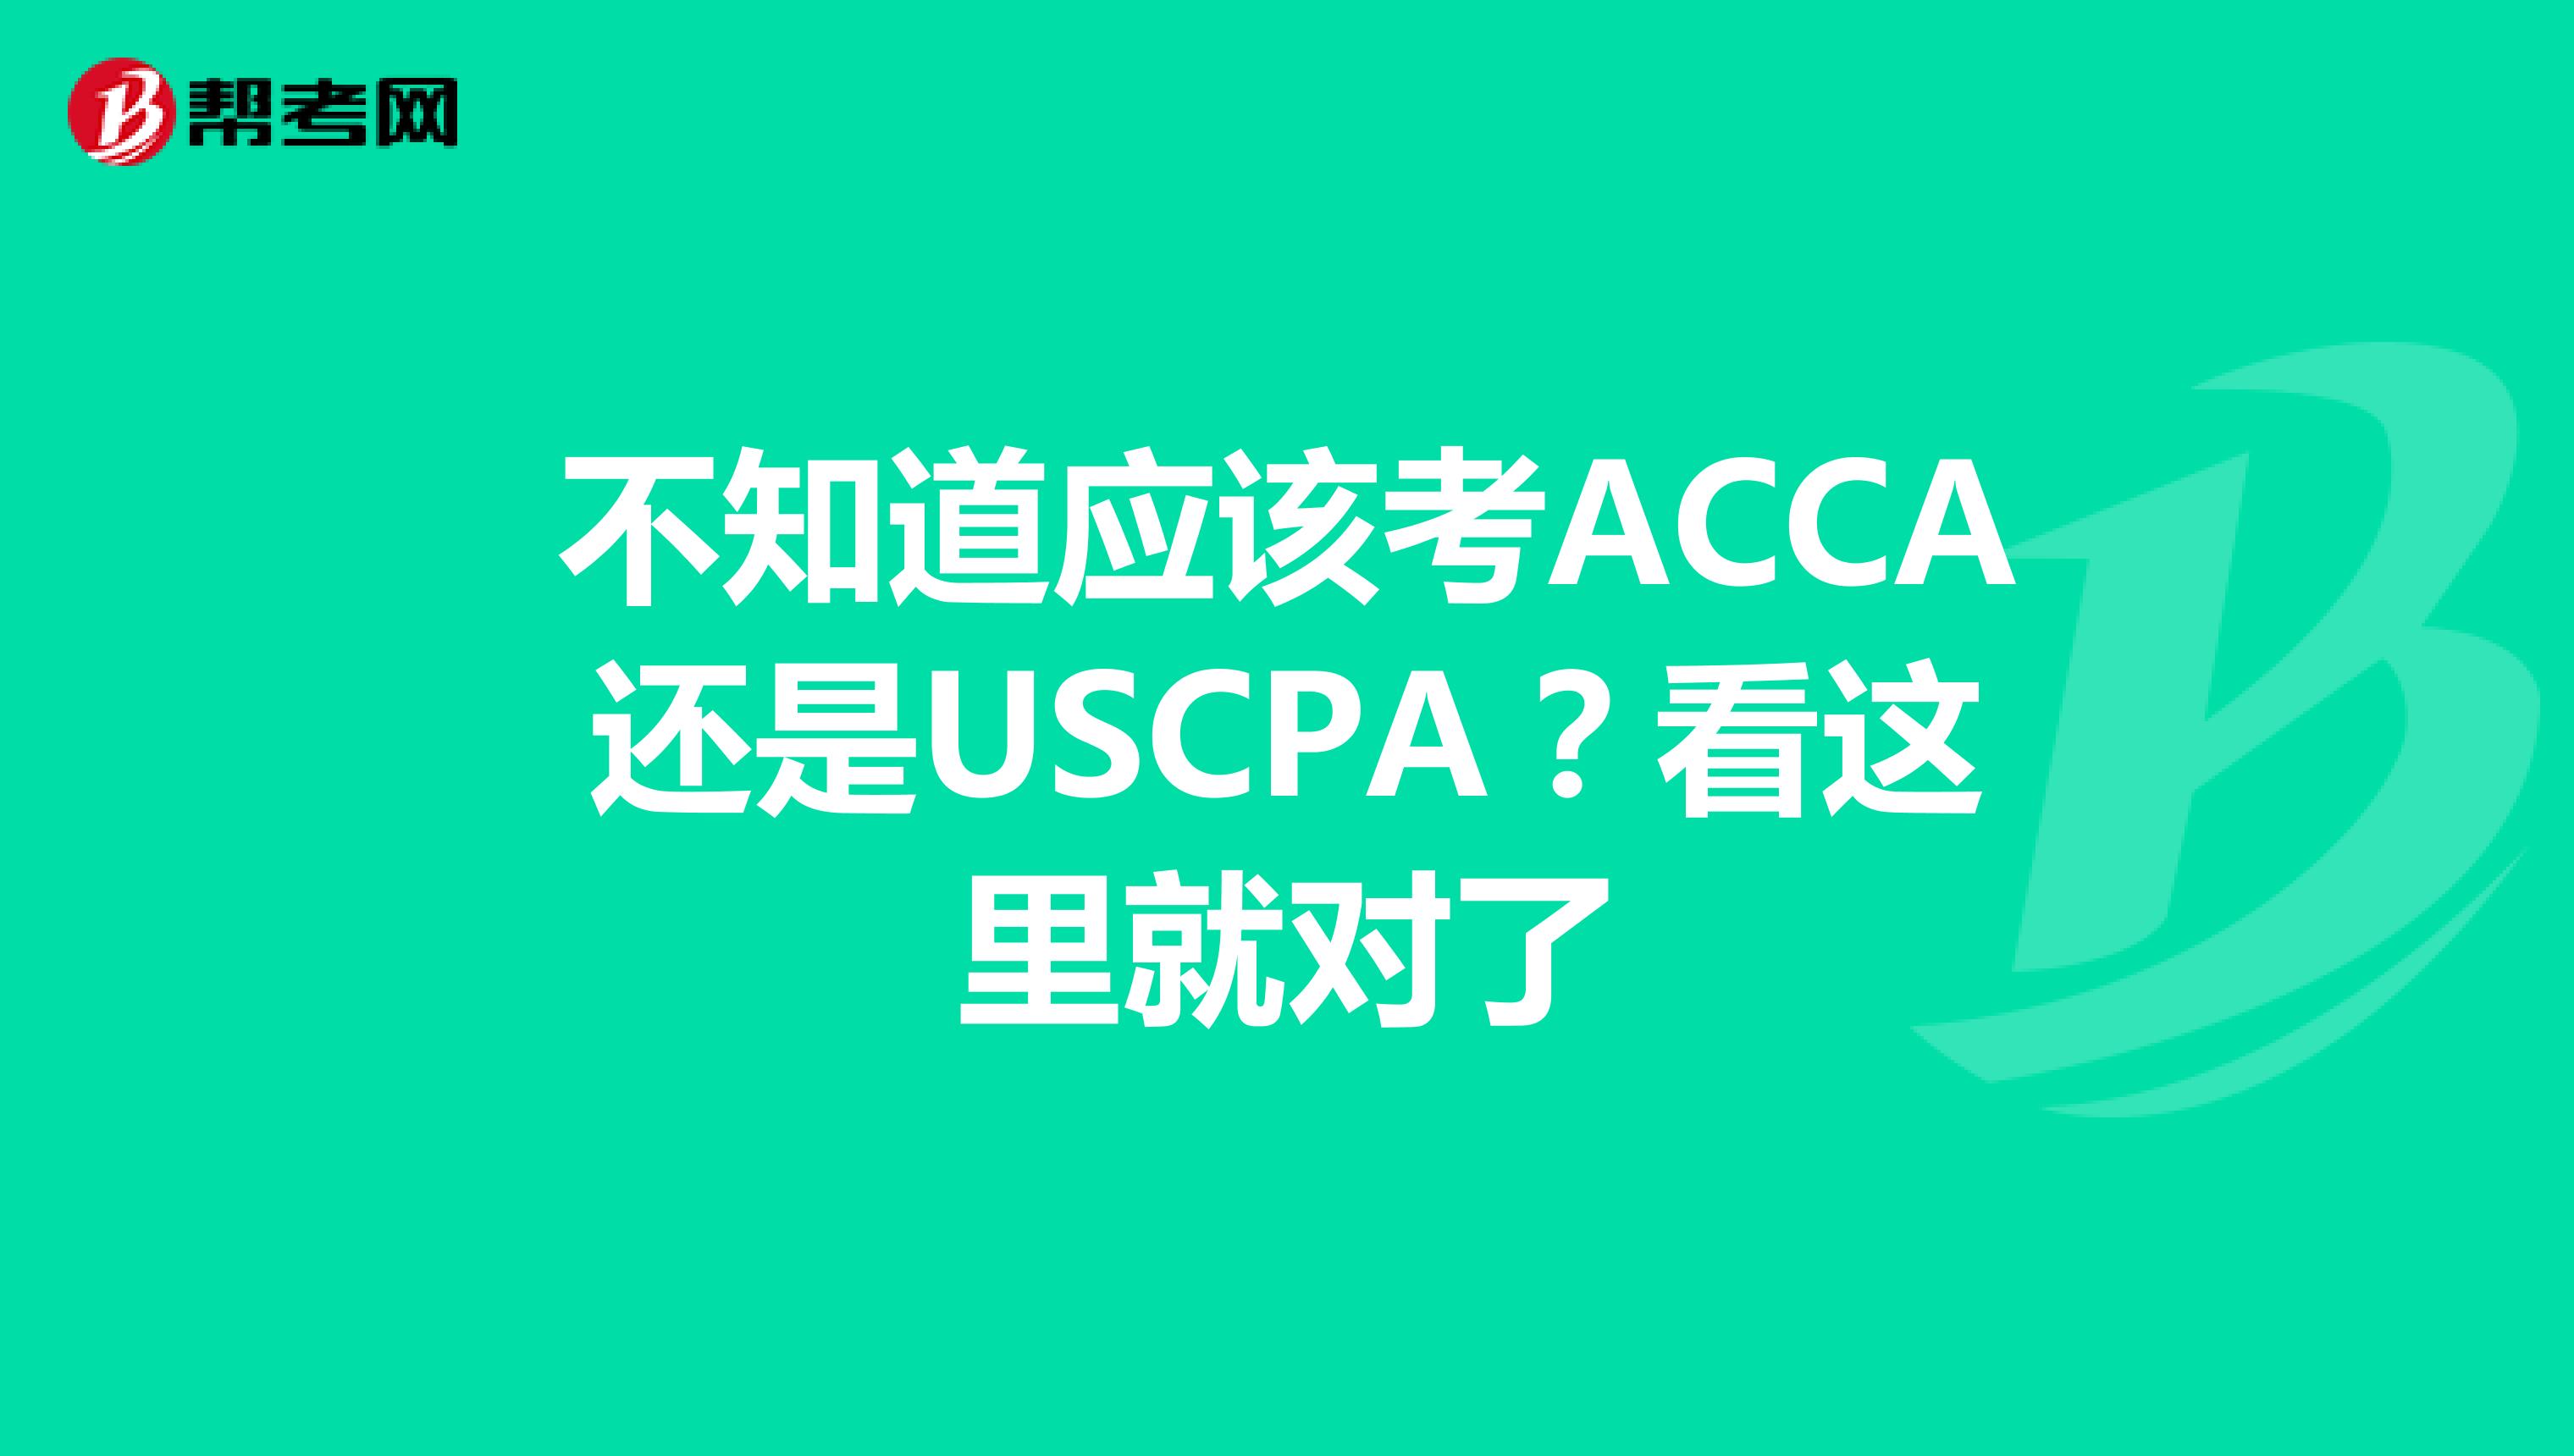 不知道应该考ACCA还是USCPA？看这里就对了